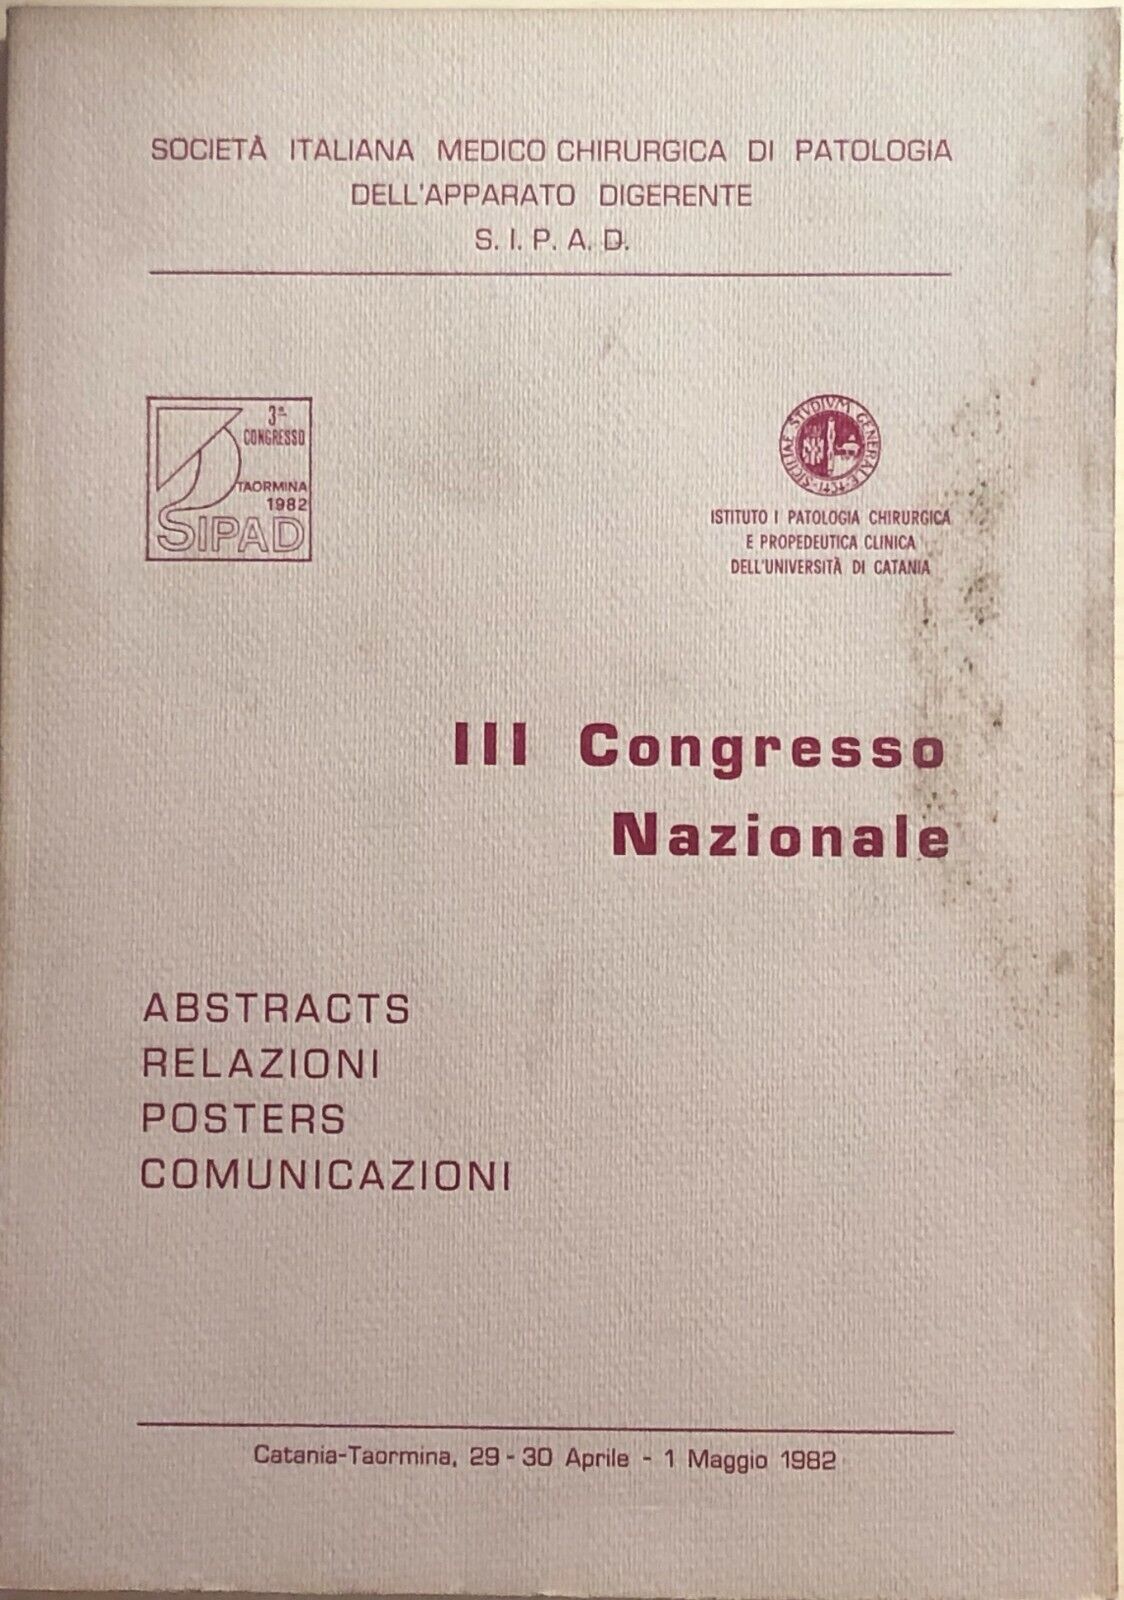 III Congresso nazionale ARPC di AA.VV., 1982, SIPAD